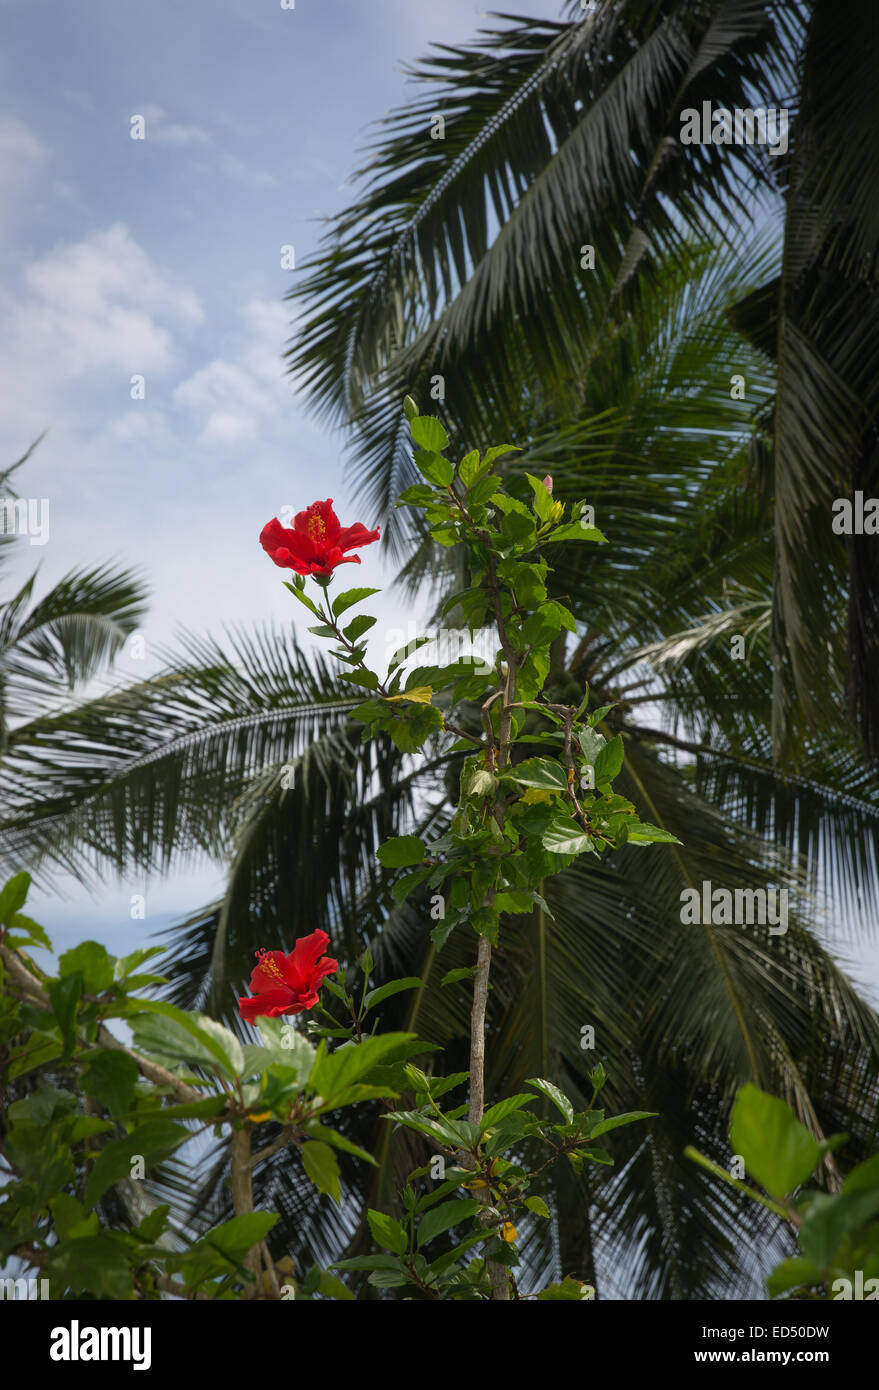 Roter Hibiskus Blumen und Palmen in einem tropischen Garten, südlichen Provinz, Sri Lanka, Asien. Stockfoto